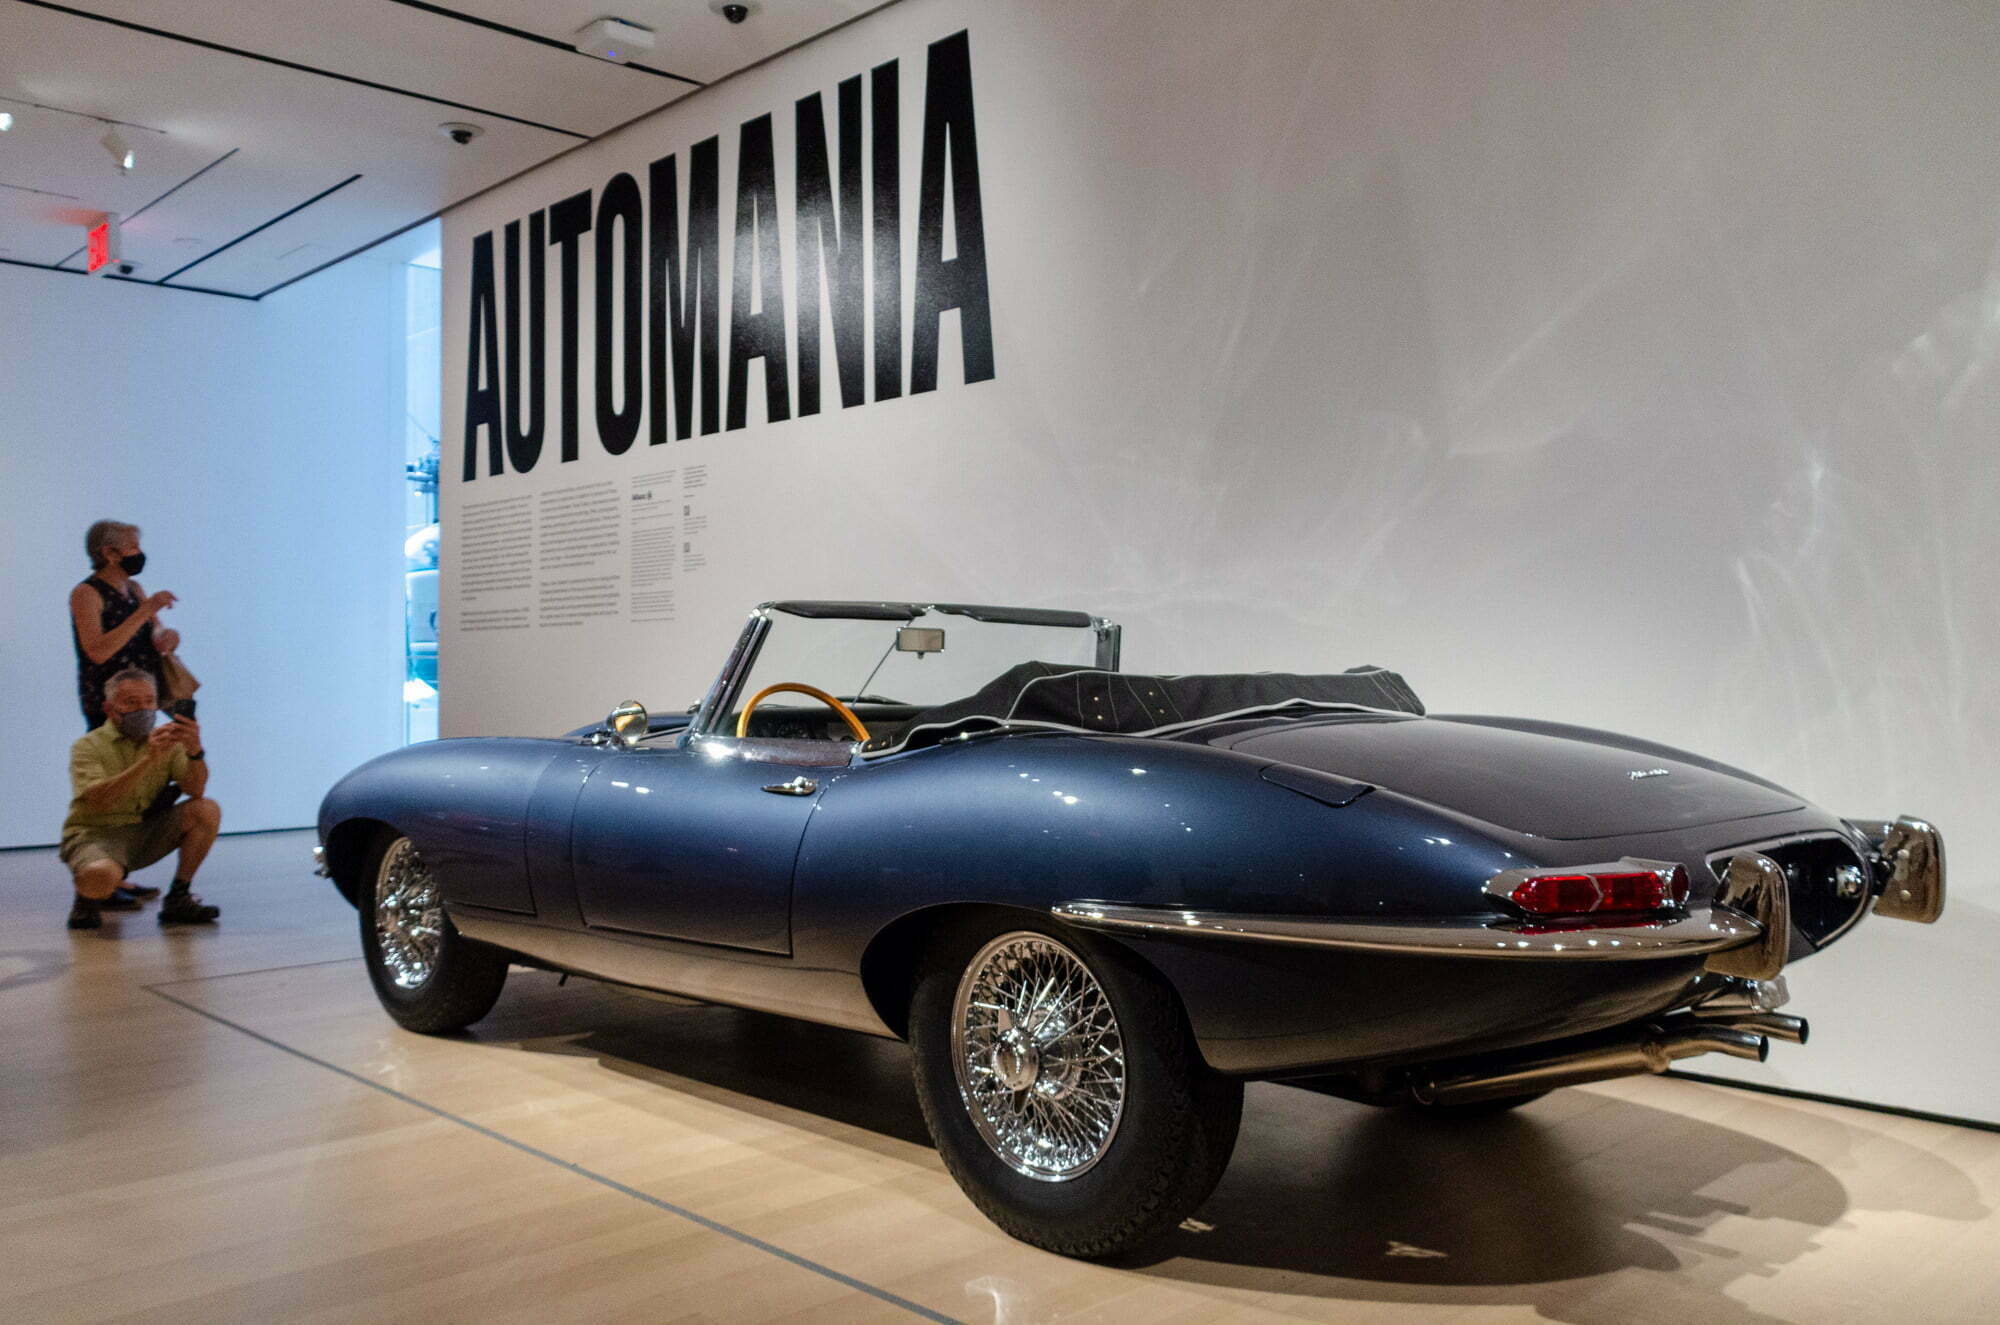 Automania, E-Type, Jaguar, MOMA, Museum of Modern Art